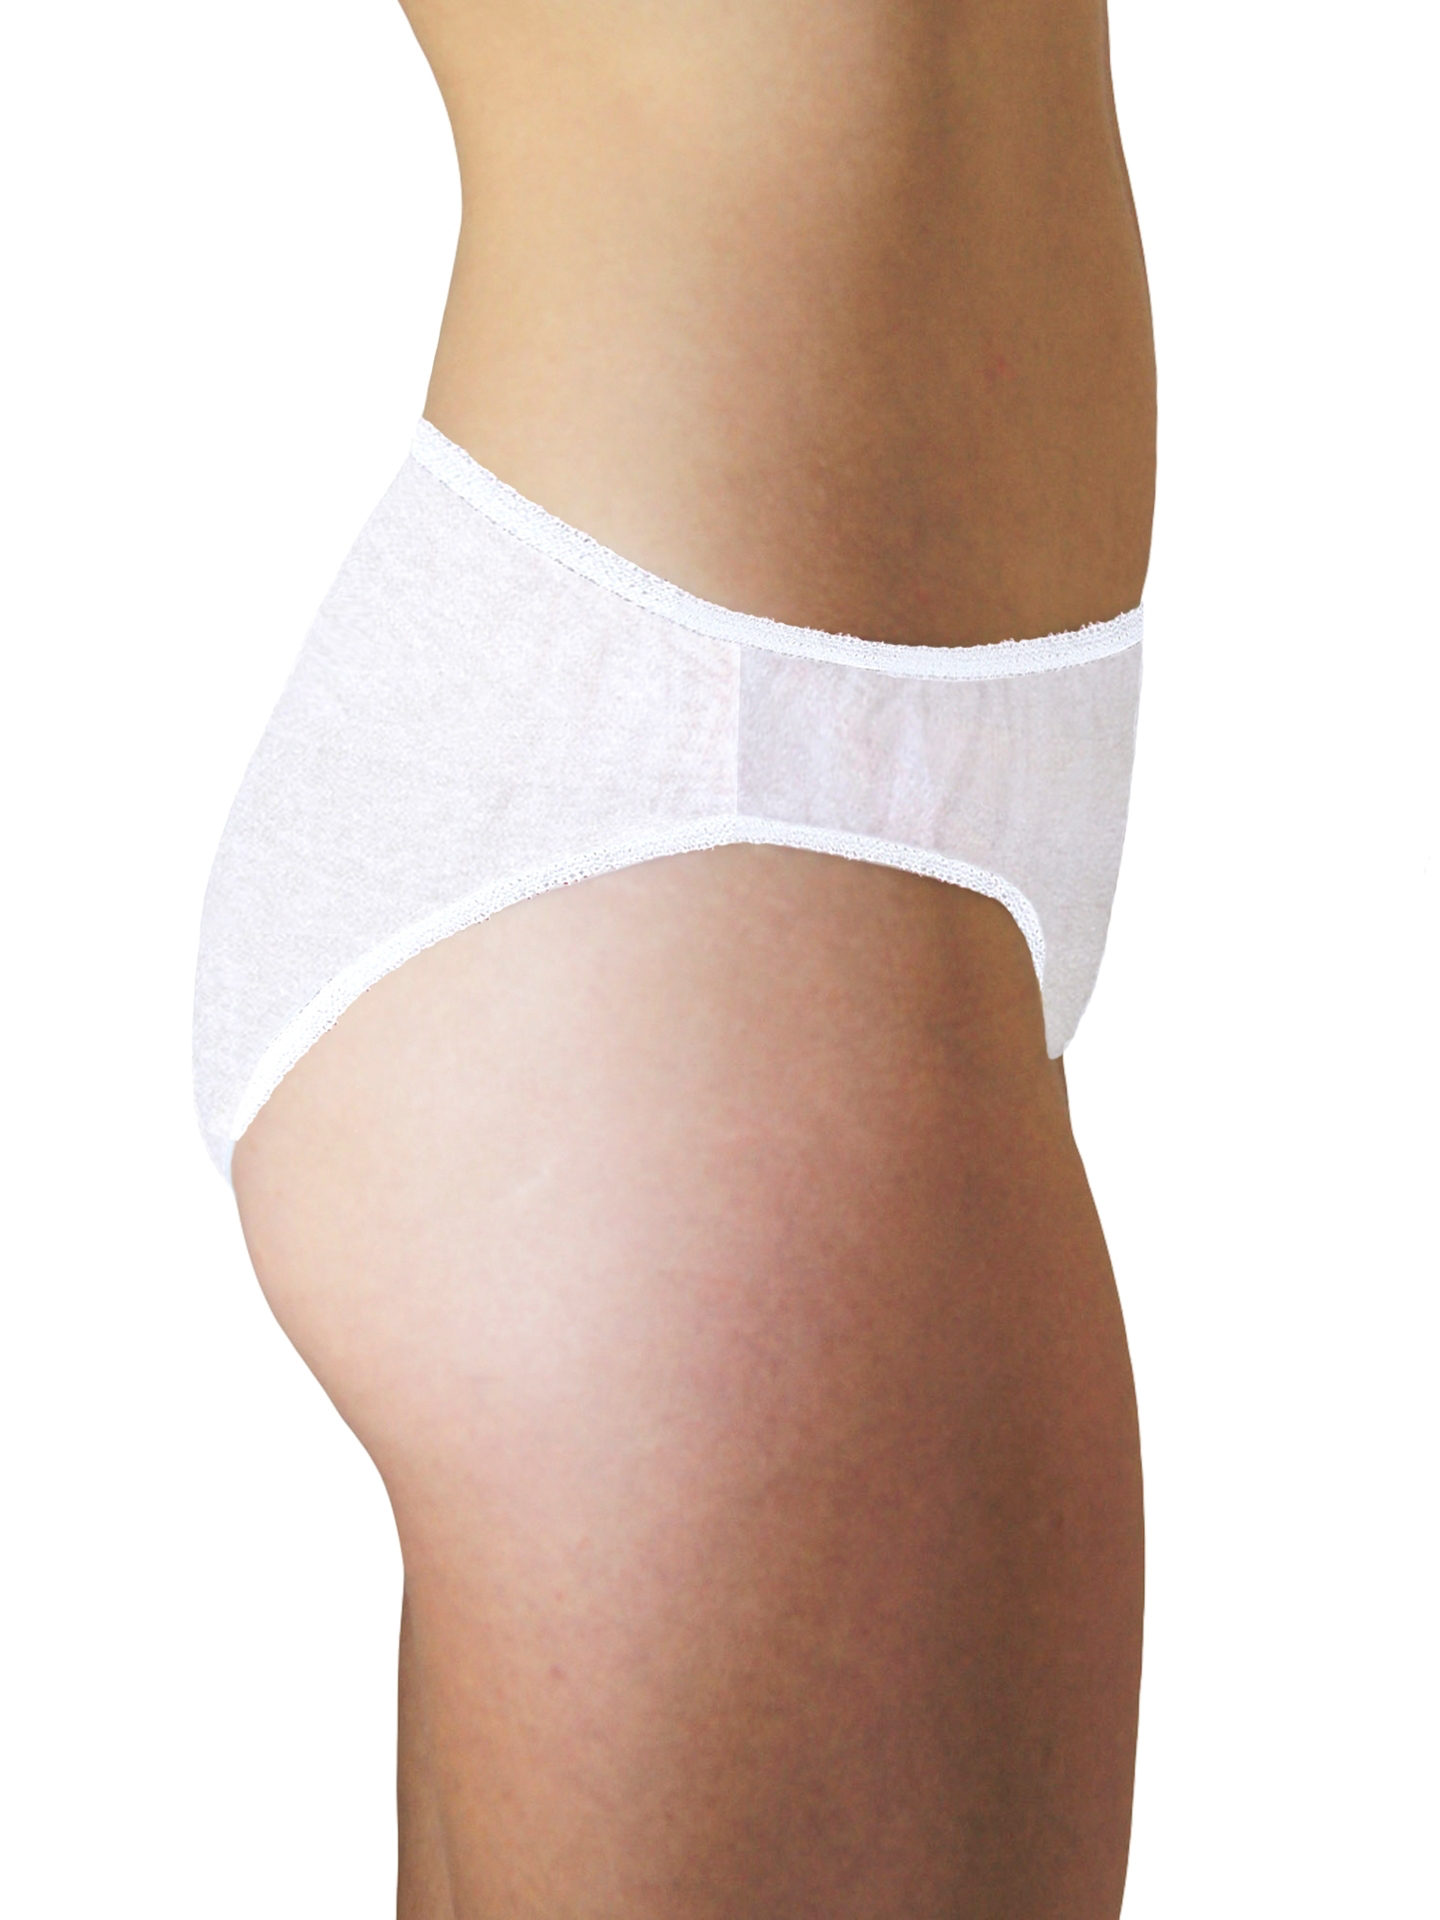 5Pcs Disposable Underwear for Women Breathable Underpants Travel Women  Briefs Portable Female Briefs